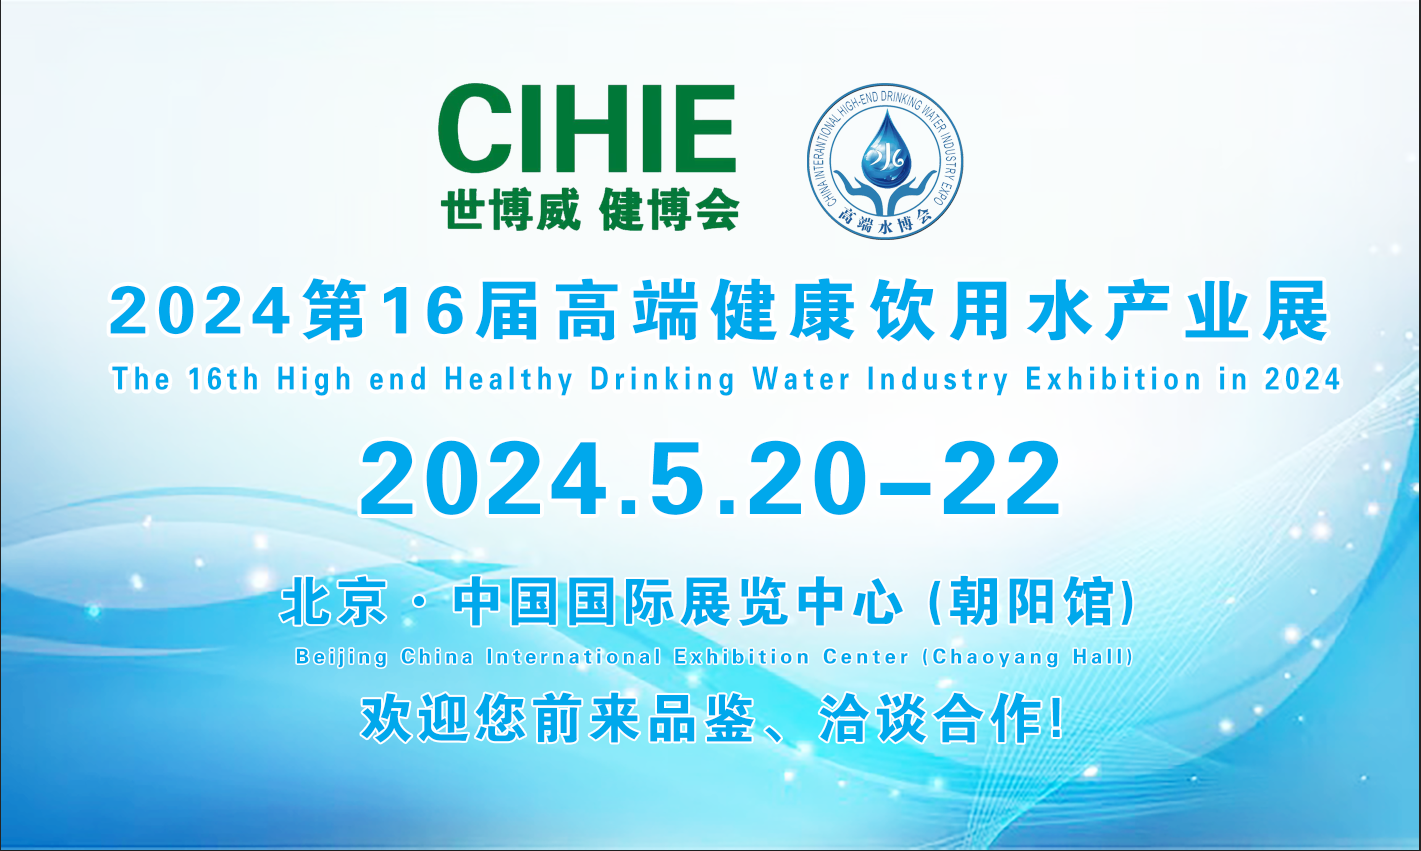 2024第16届中国国际高端健康饮用水产业博览会-北京展